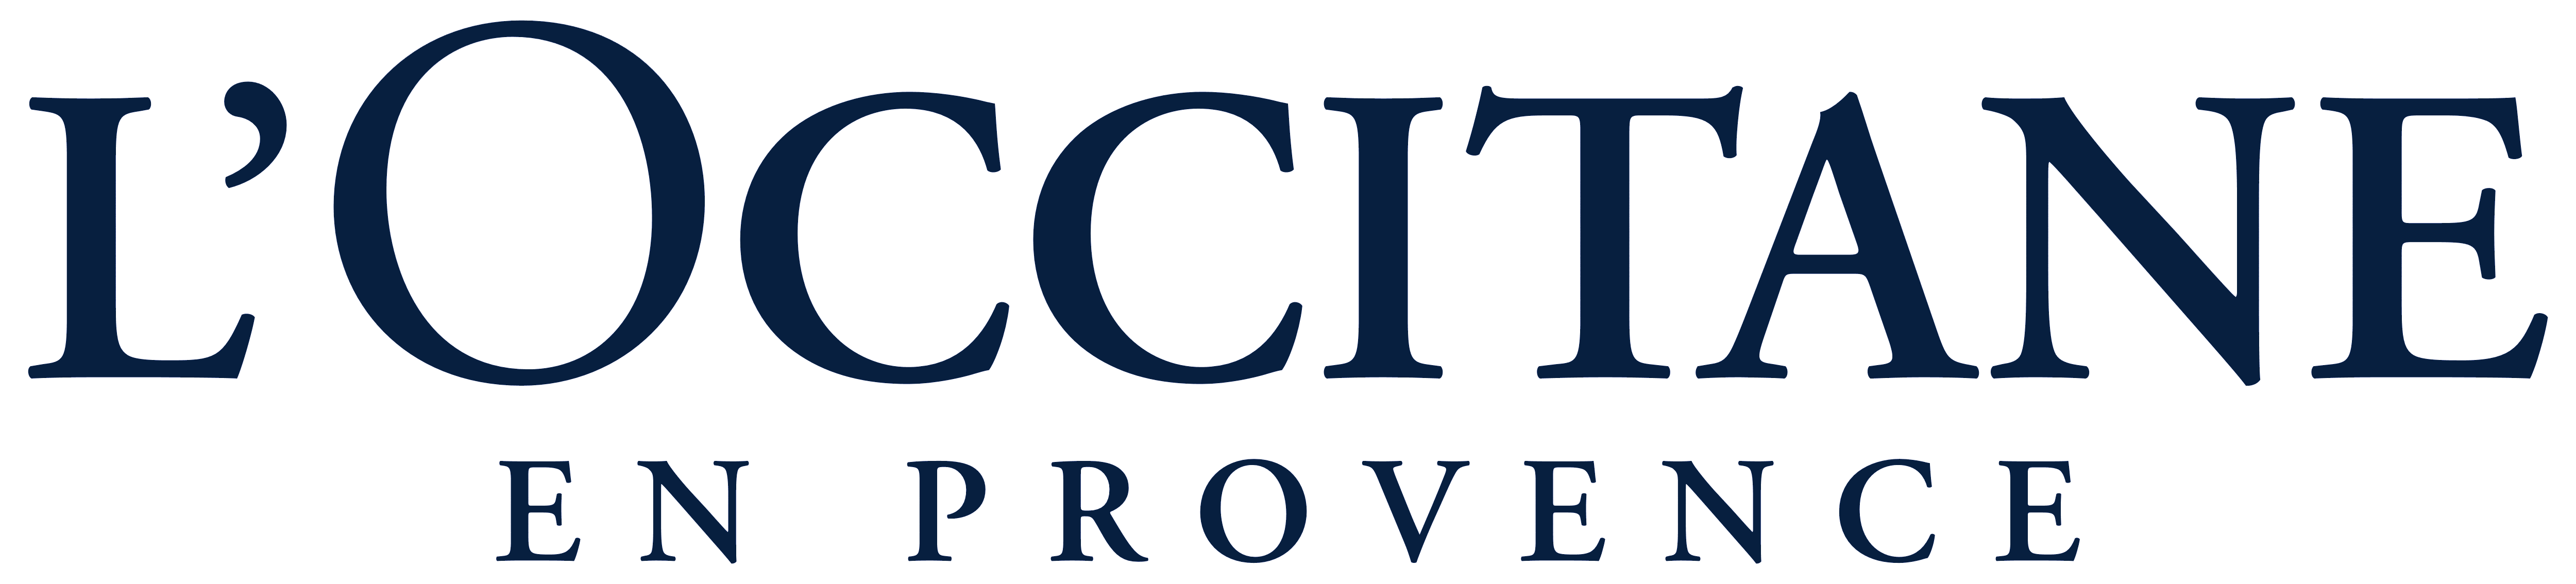 L'occitane Logo